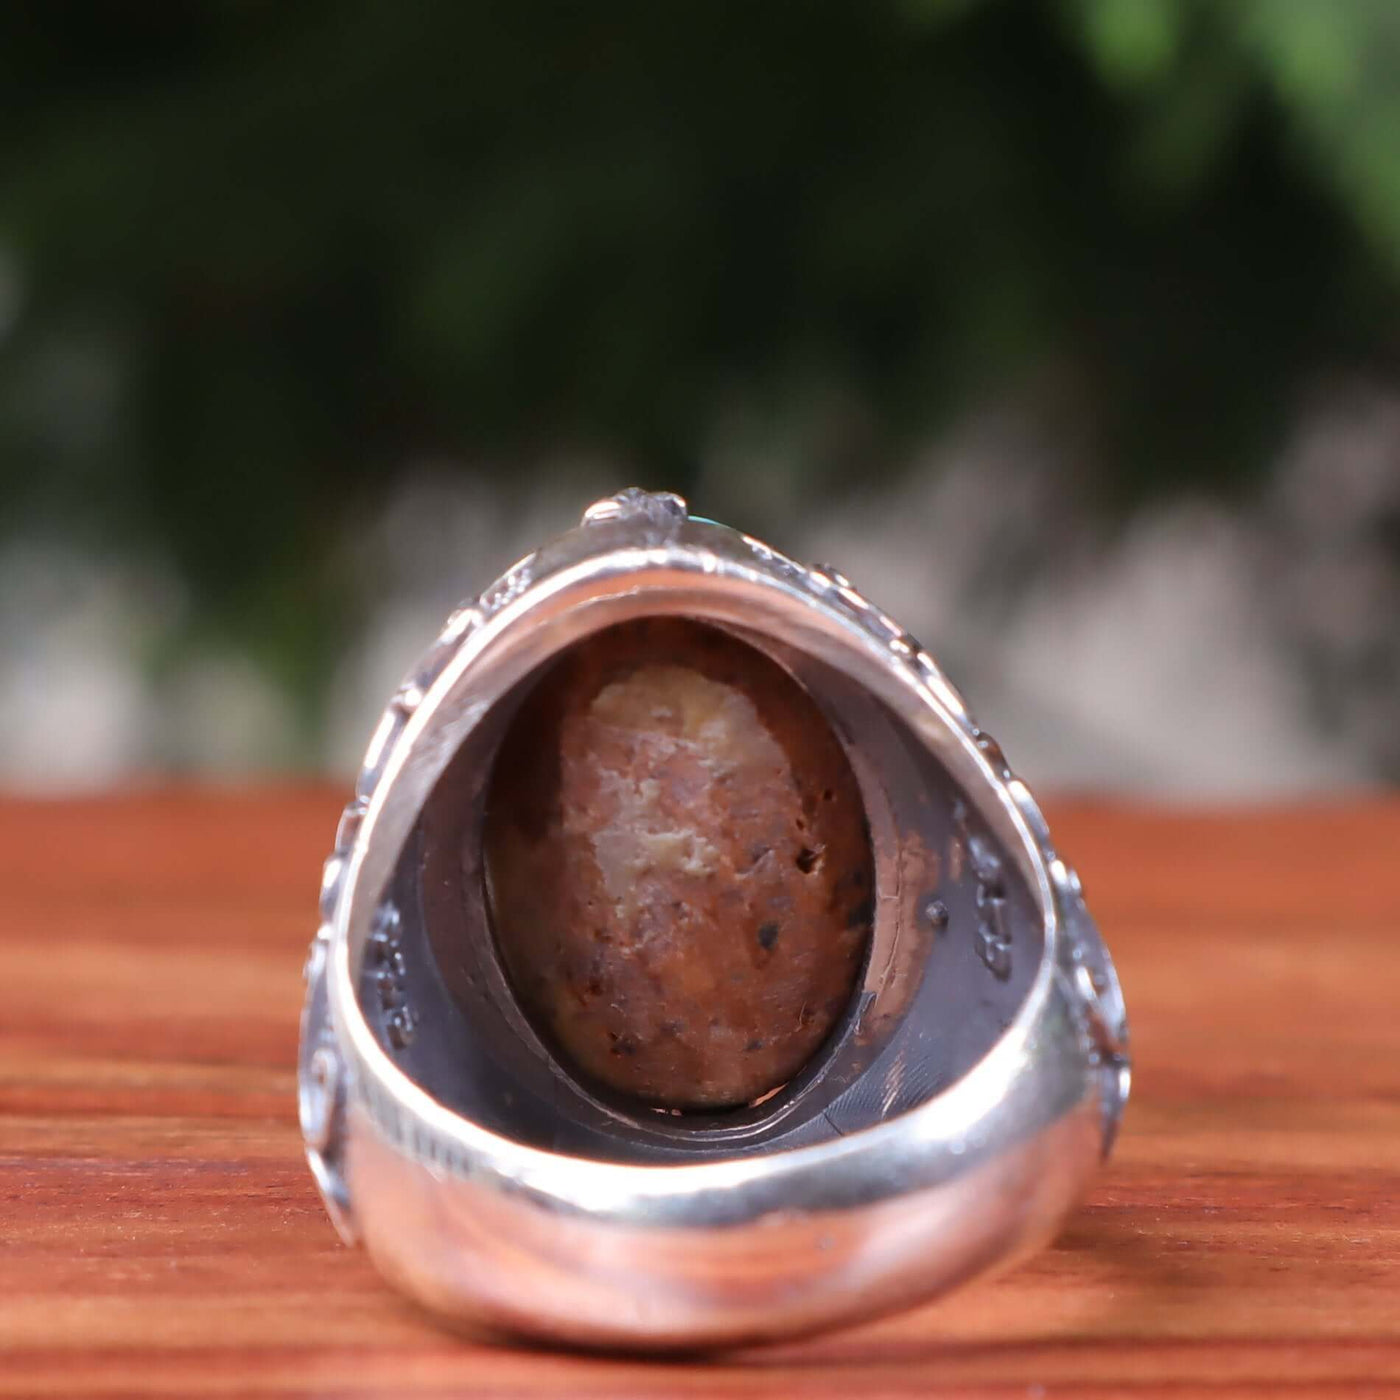 Nyshapuri Feroza Stone Ring | Natural Green Turquoise Stone Ring | Sterling Silver 92.5 | Geniune Feroza Stone | US Size 10 - AlAliGems